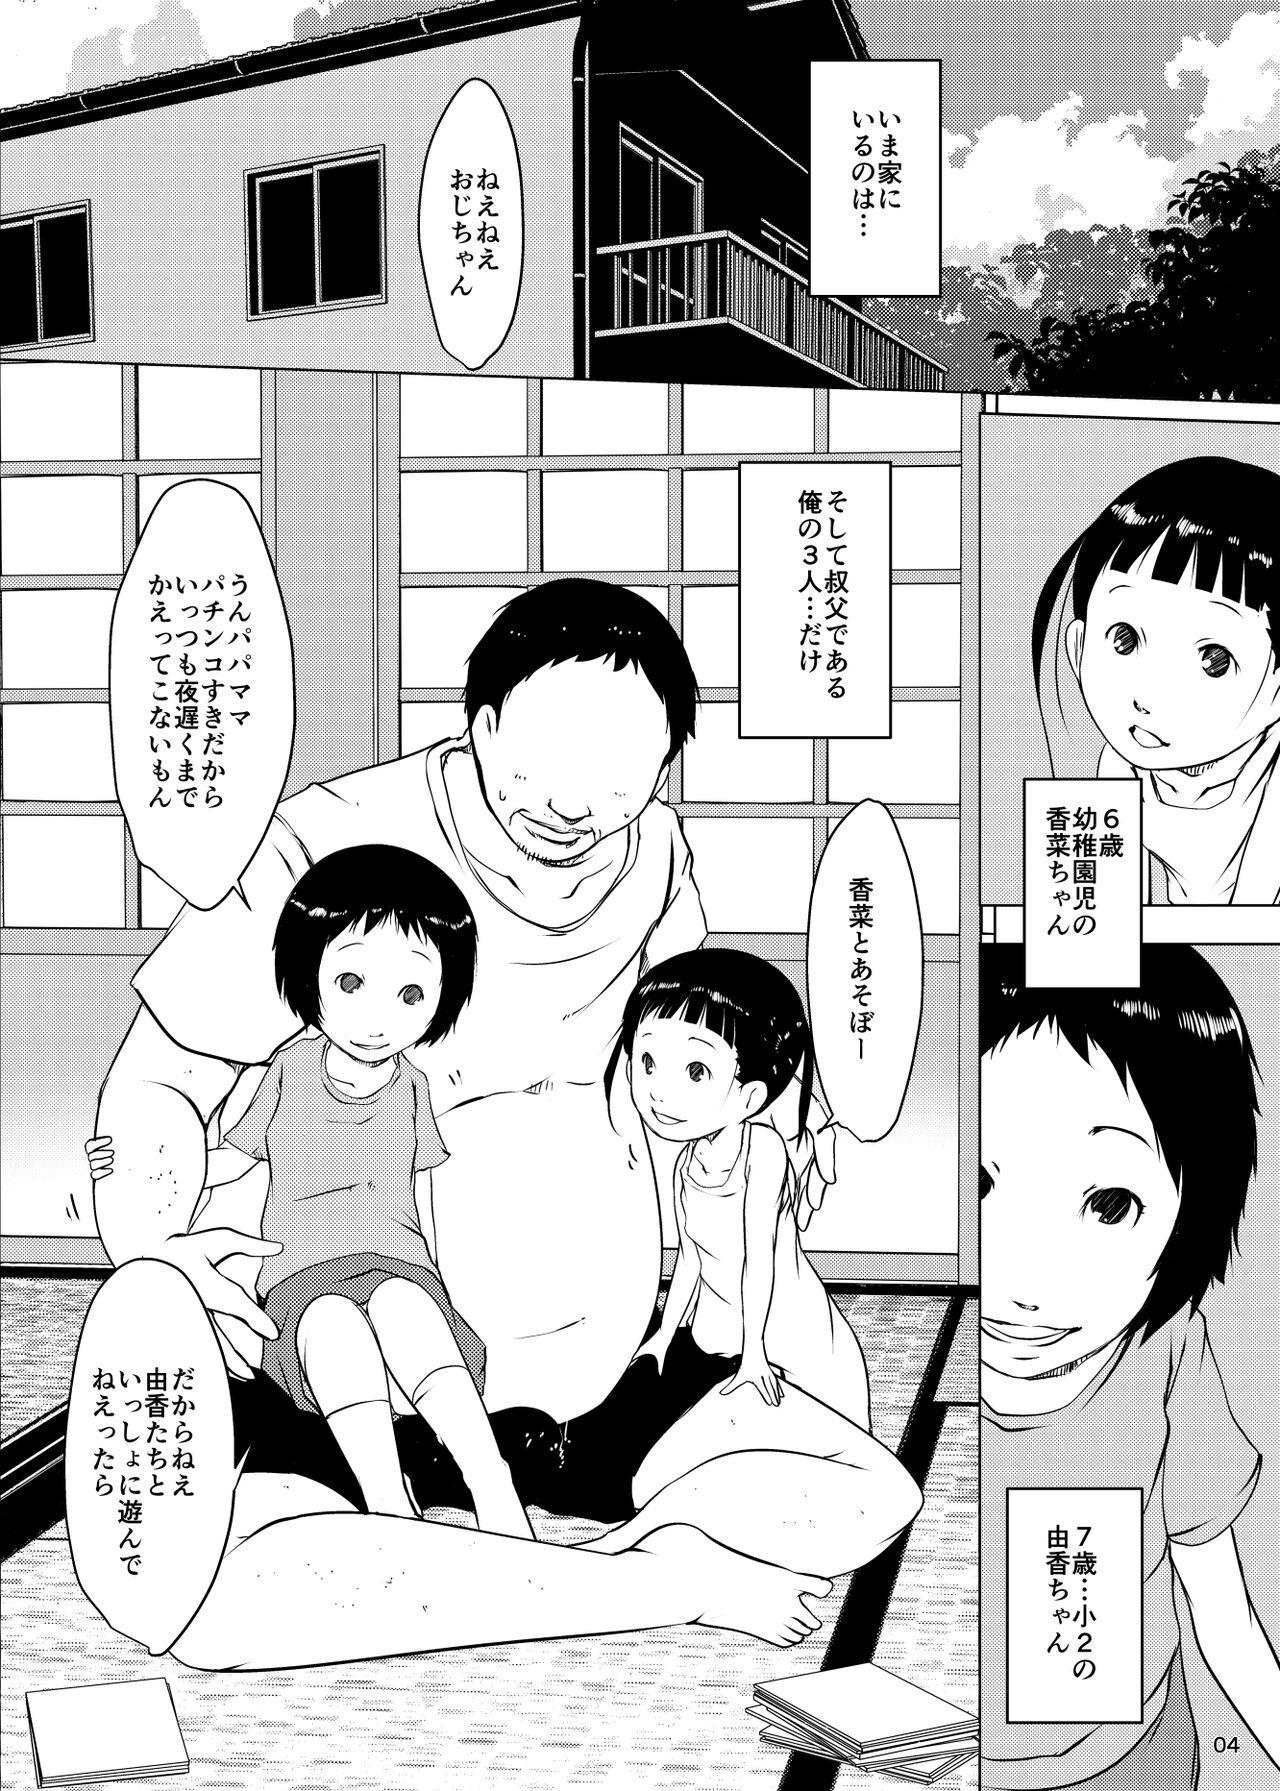 Stream Jian Hassei Re:05 + Jian Hassei Puni Pedo Kindergarten 2022 Penis - Page 3